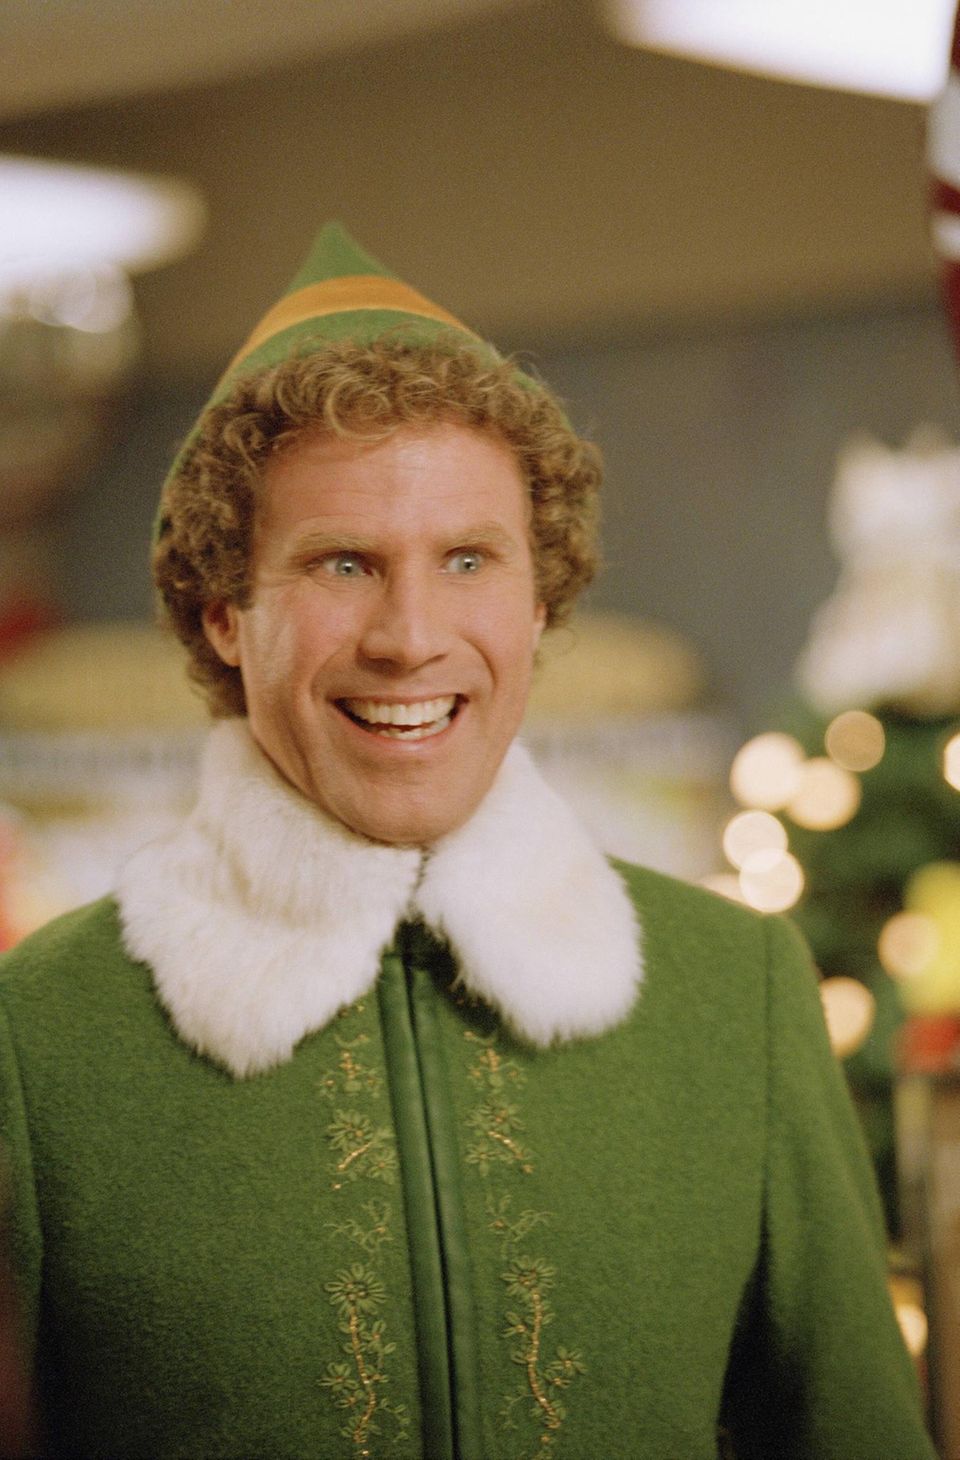 Will Ferrell als Buddy in "Buddy – Der Weihnachtself"